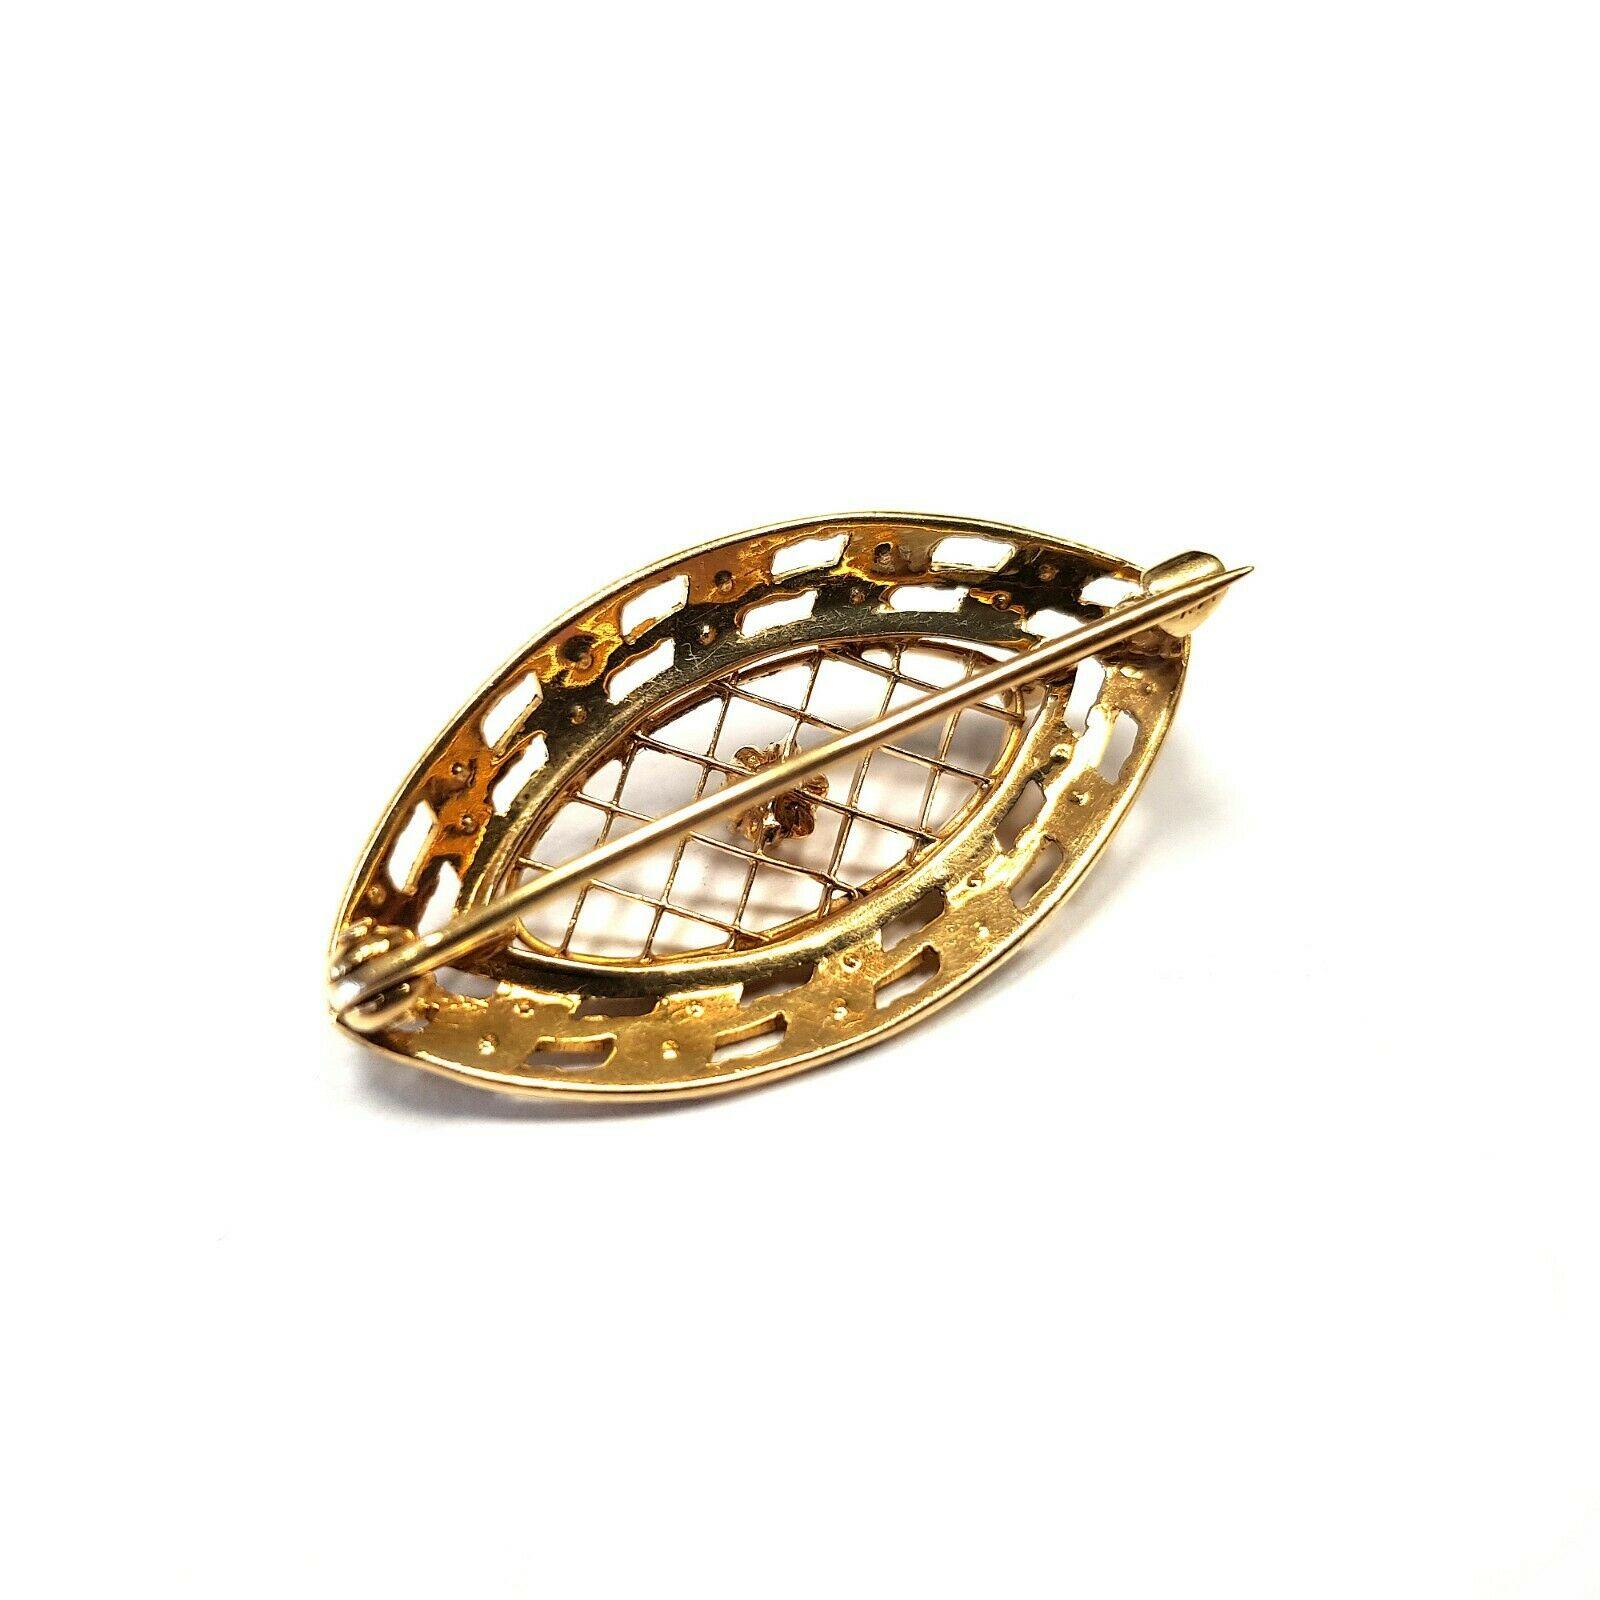  Dies ist ein 14k Gelbgold Schild Brosche mit sehr kleinen Perlen und runden Diamanten 0,08ct. Sieht elegant aus. 
Spezifikationen:
    hauptstein: TINY PEARLS
    zusätzlich: DIAMANT
    diamanten: 1 PCS
    karat Gesamtgewicht: 0,08
    farbe: G
 